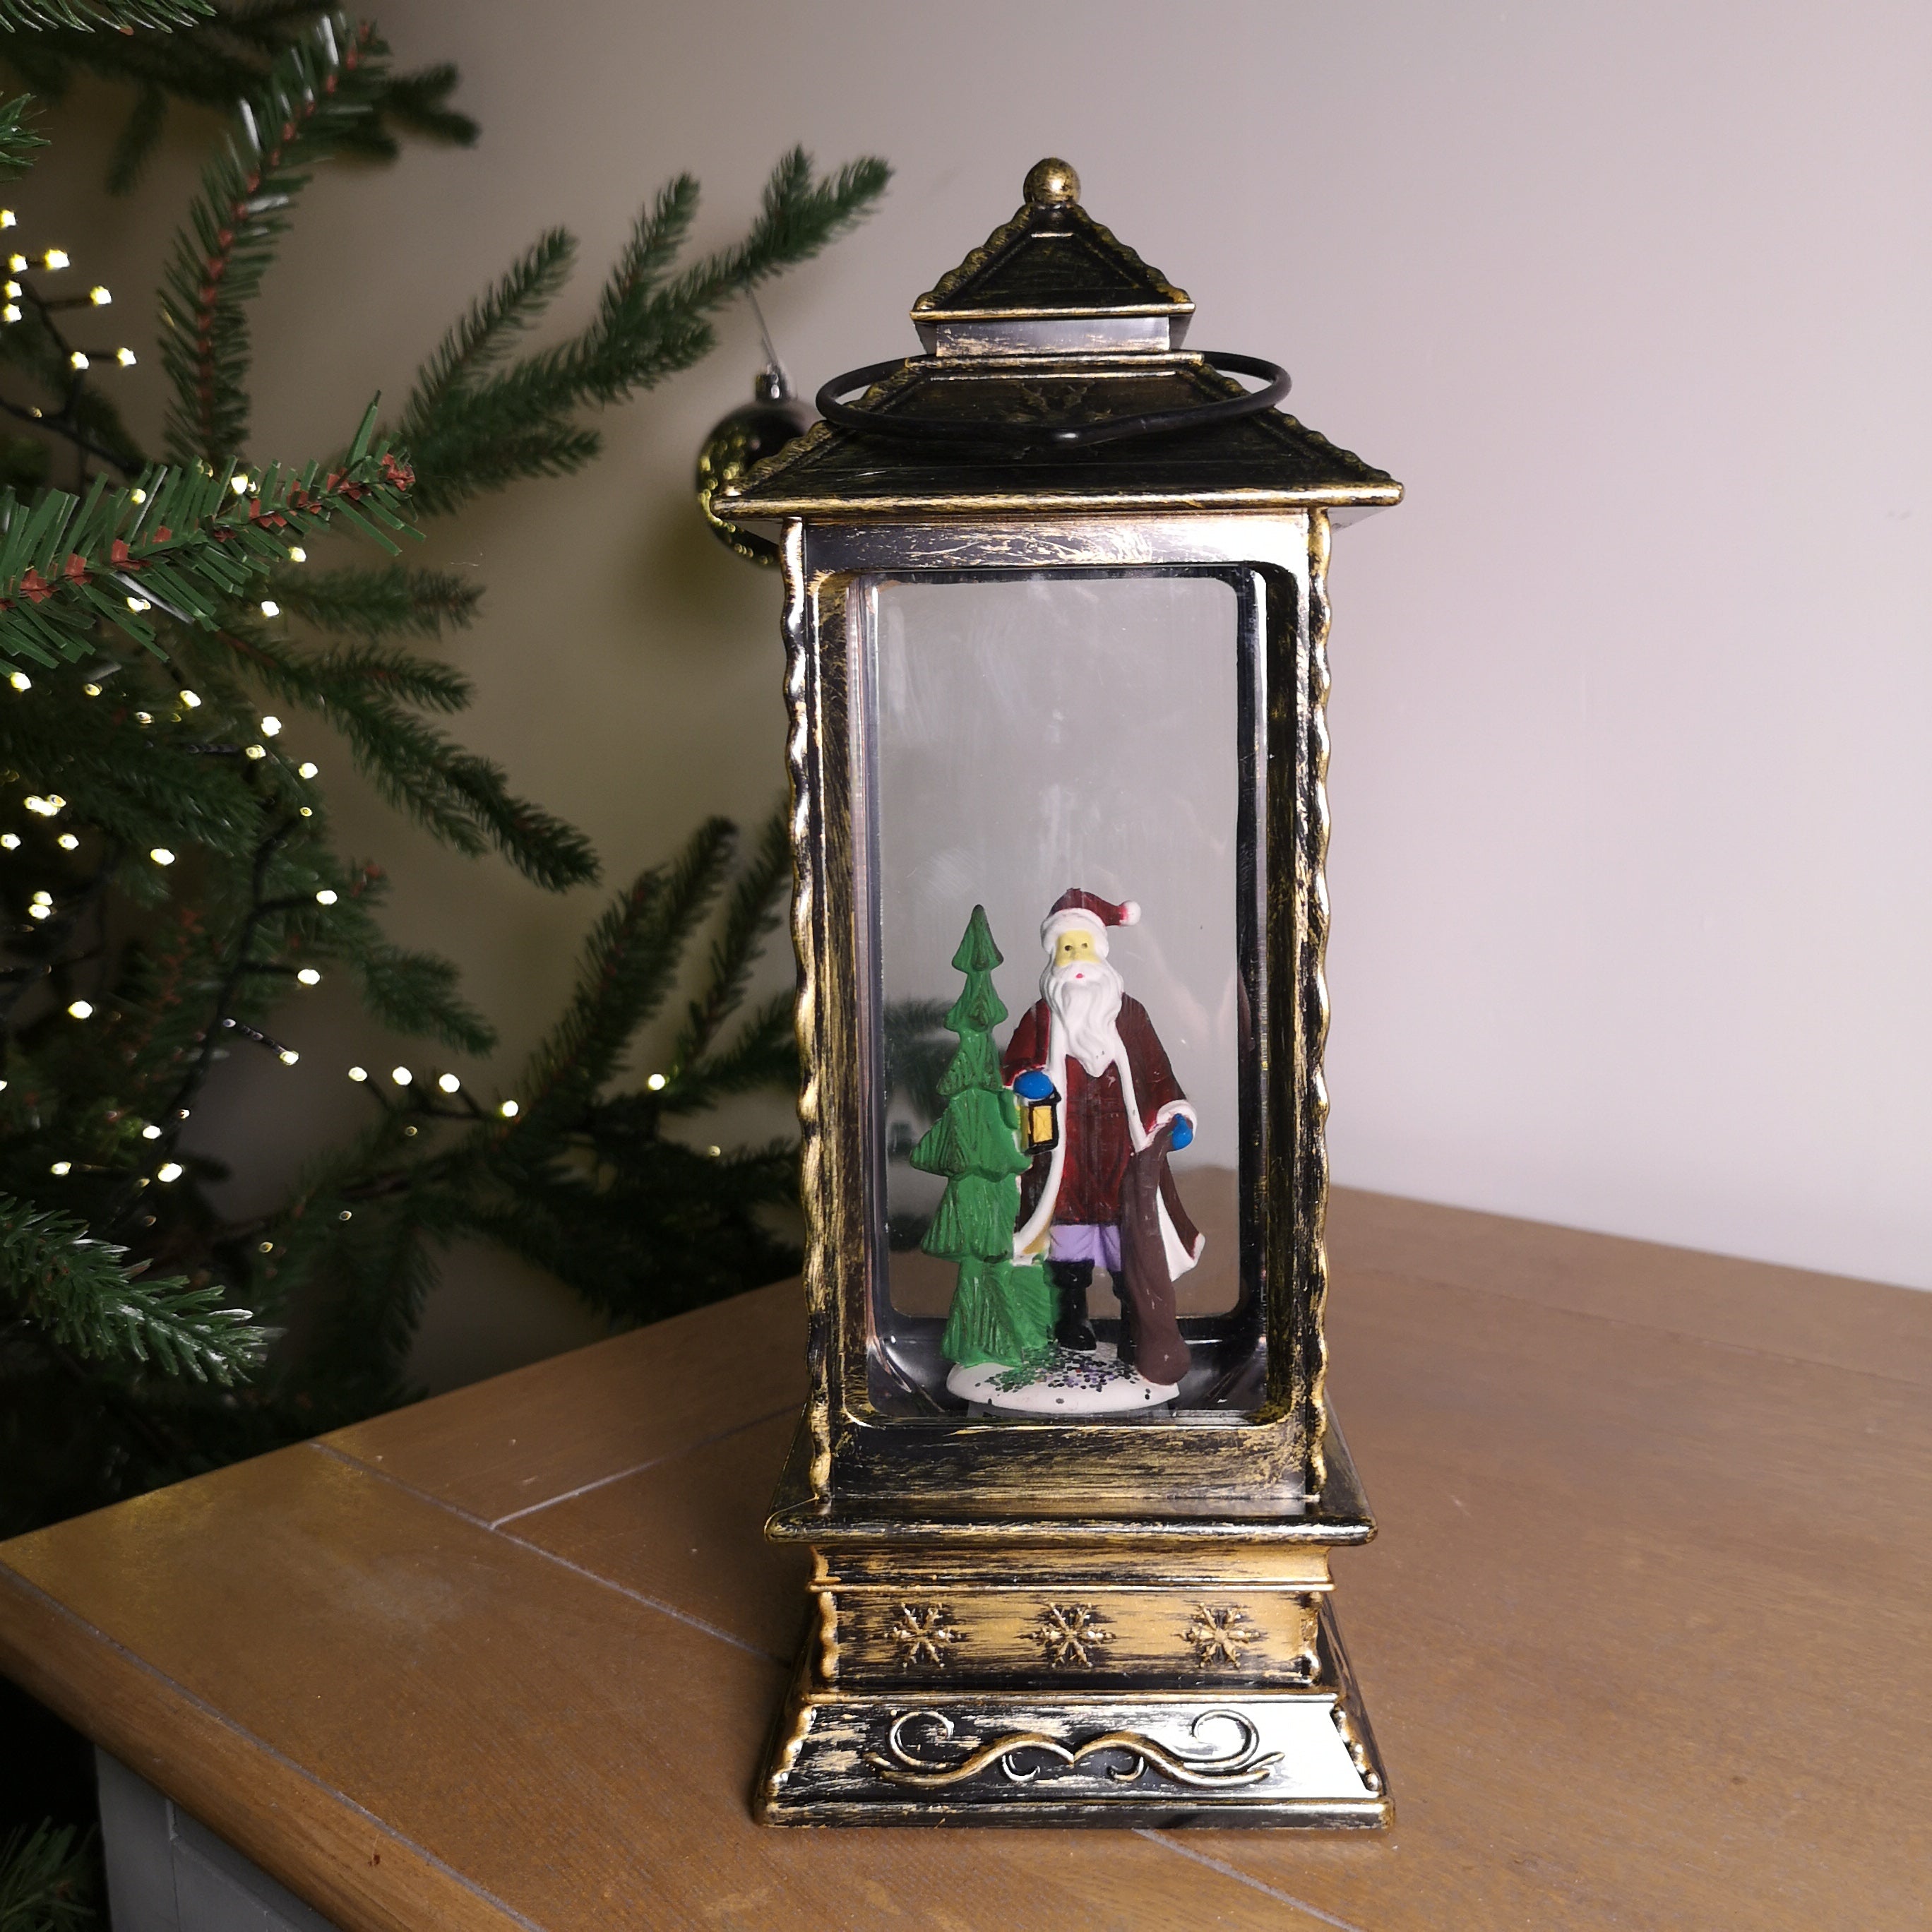 27cm Premier Glitter Water Spinner LED Lantern Christmas Decoration with Santa Scene